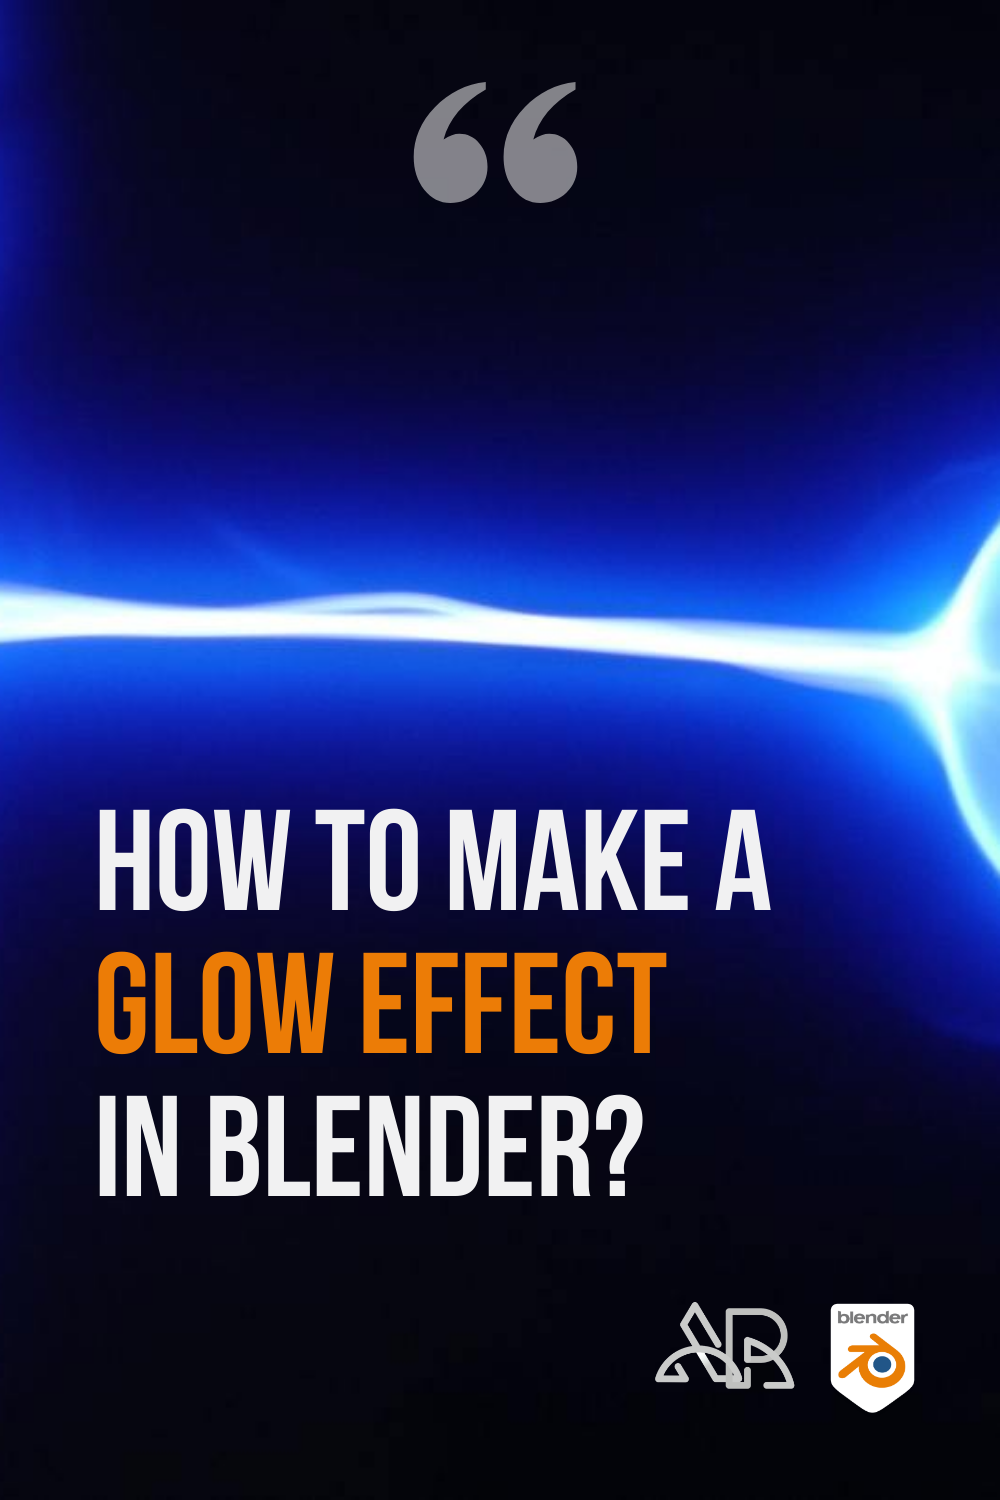 Blender - Cycles Bloom and Glow (Blender 2.8) 